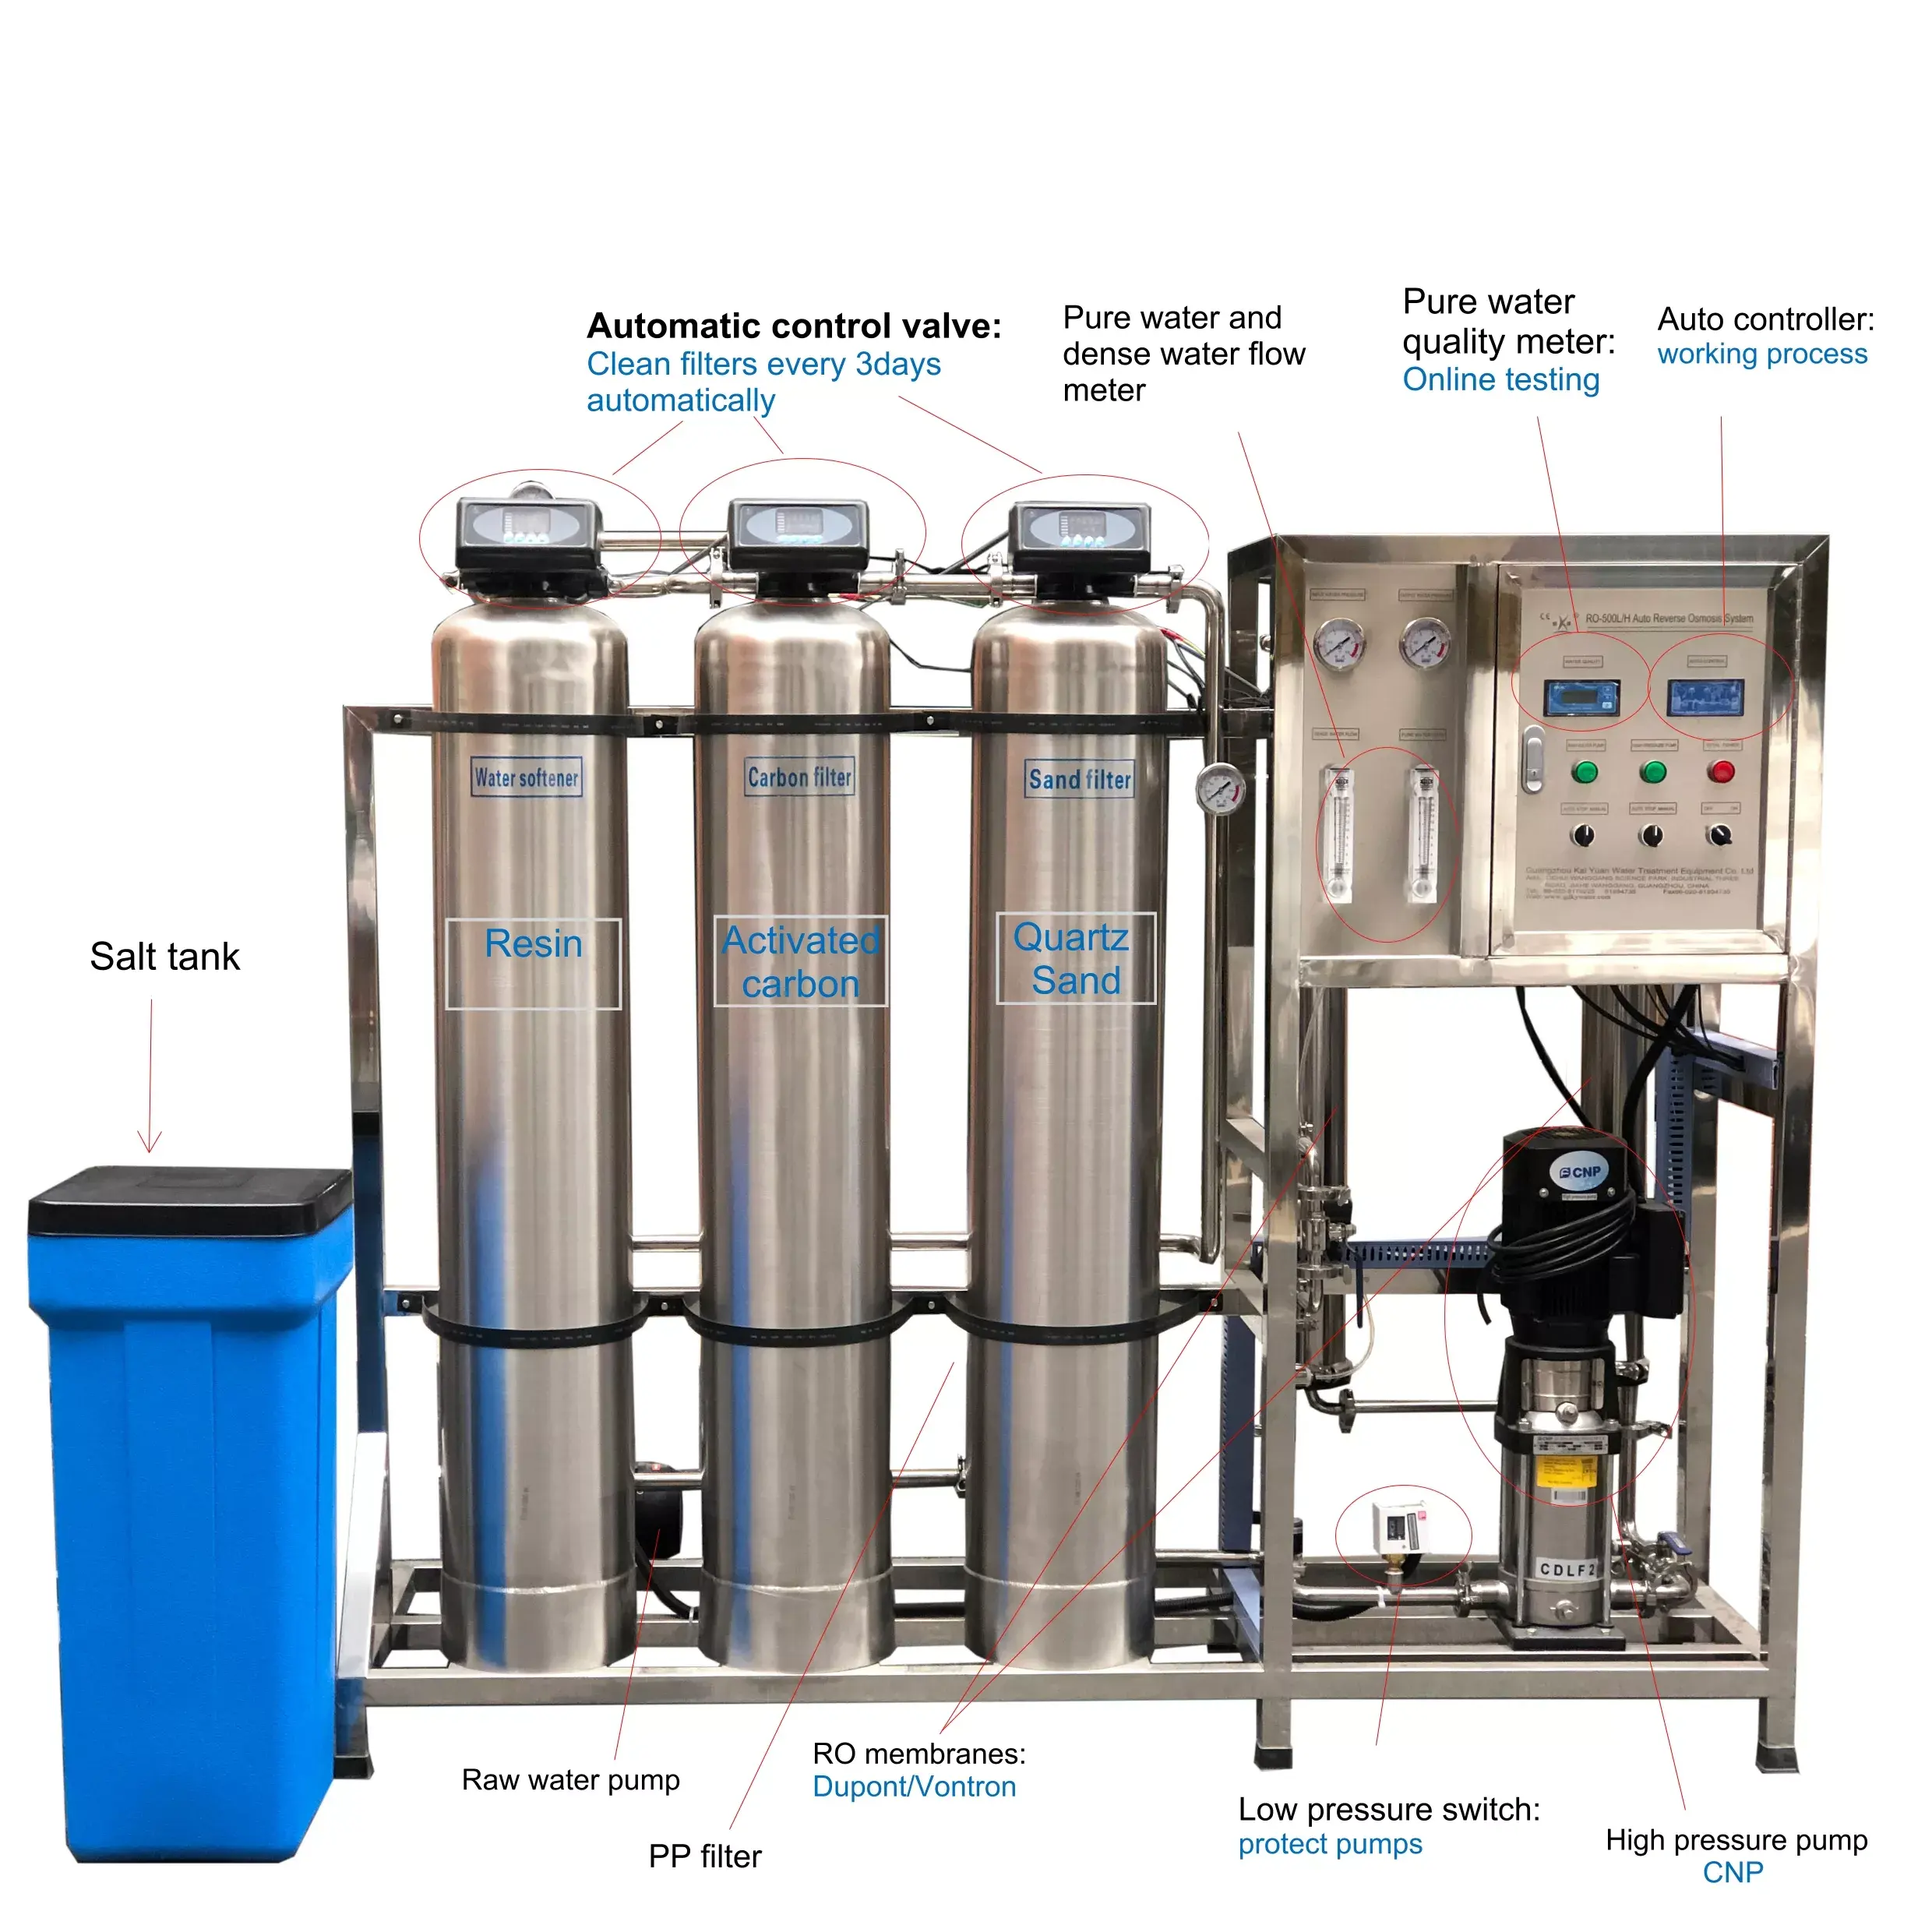 Ticari balık yetiştiriciliği kimyasal ters osmosis su filtresi sistemi için ters osmosis su filtresi sistemi